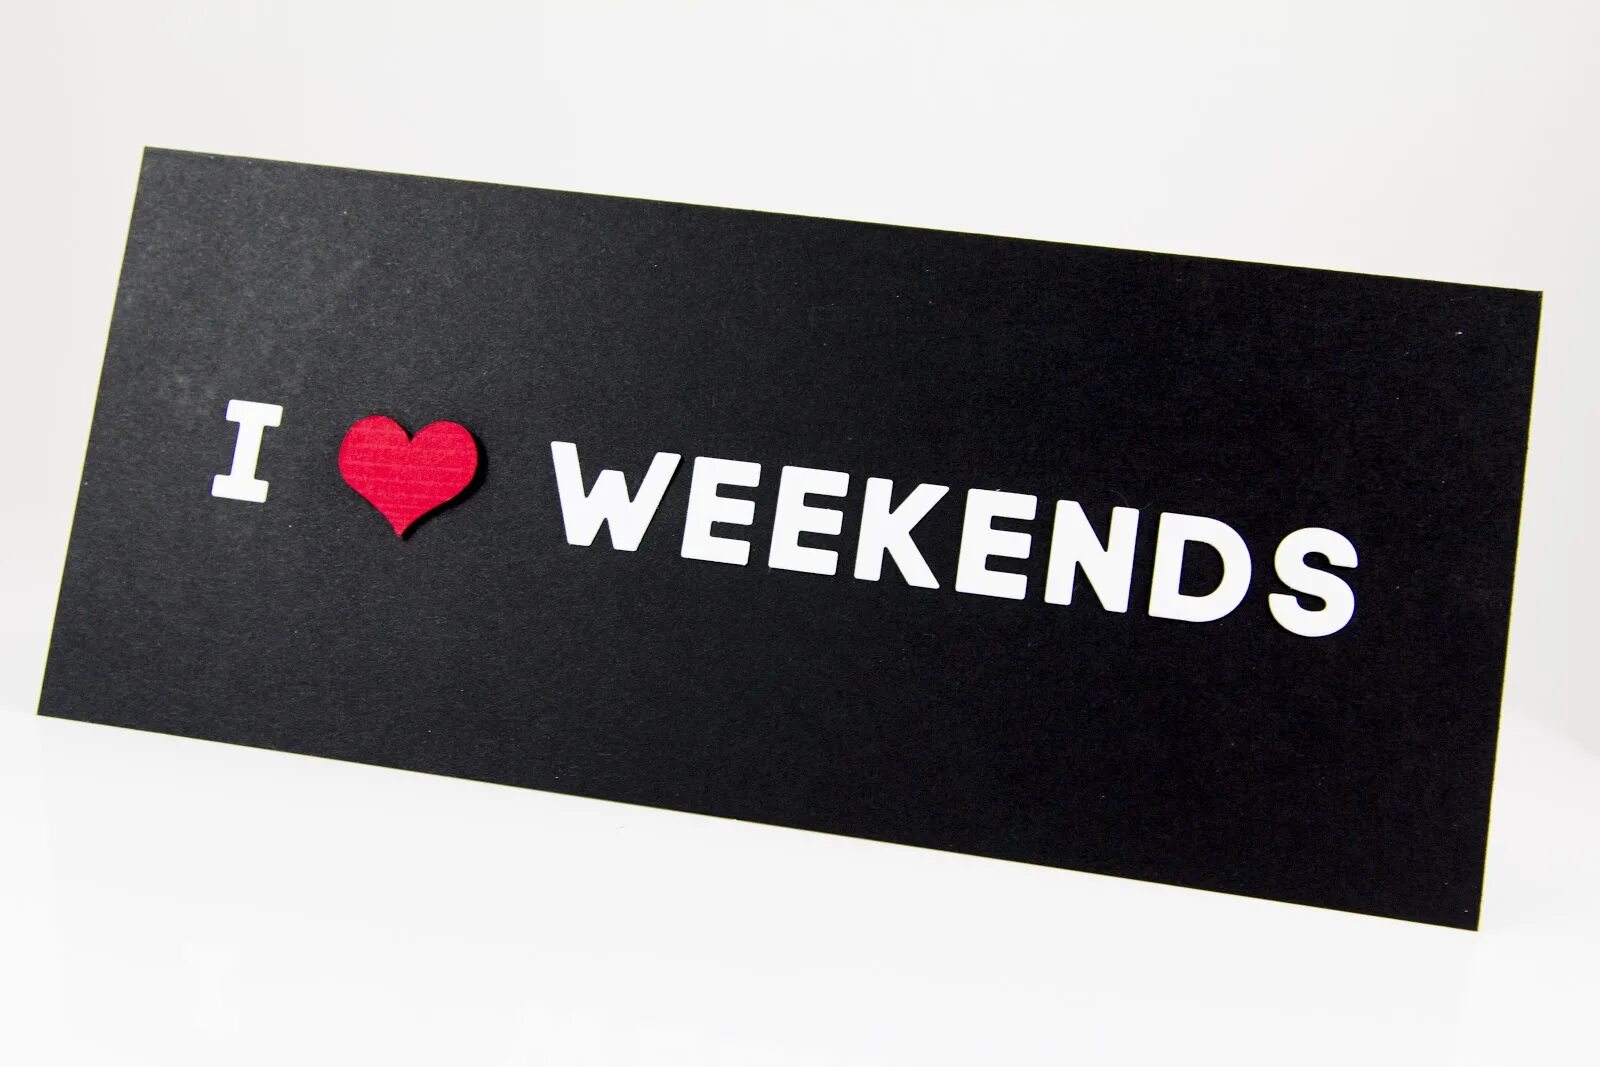 H weekend. Weekend надпись. Уикенд картинки. Weekends надпись. Weekend выходные.